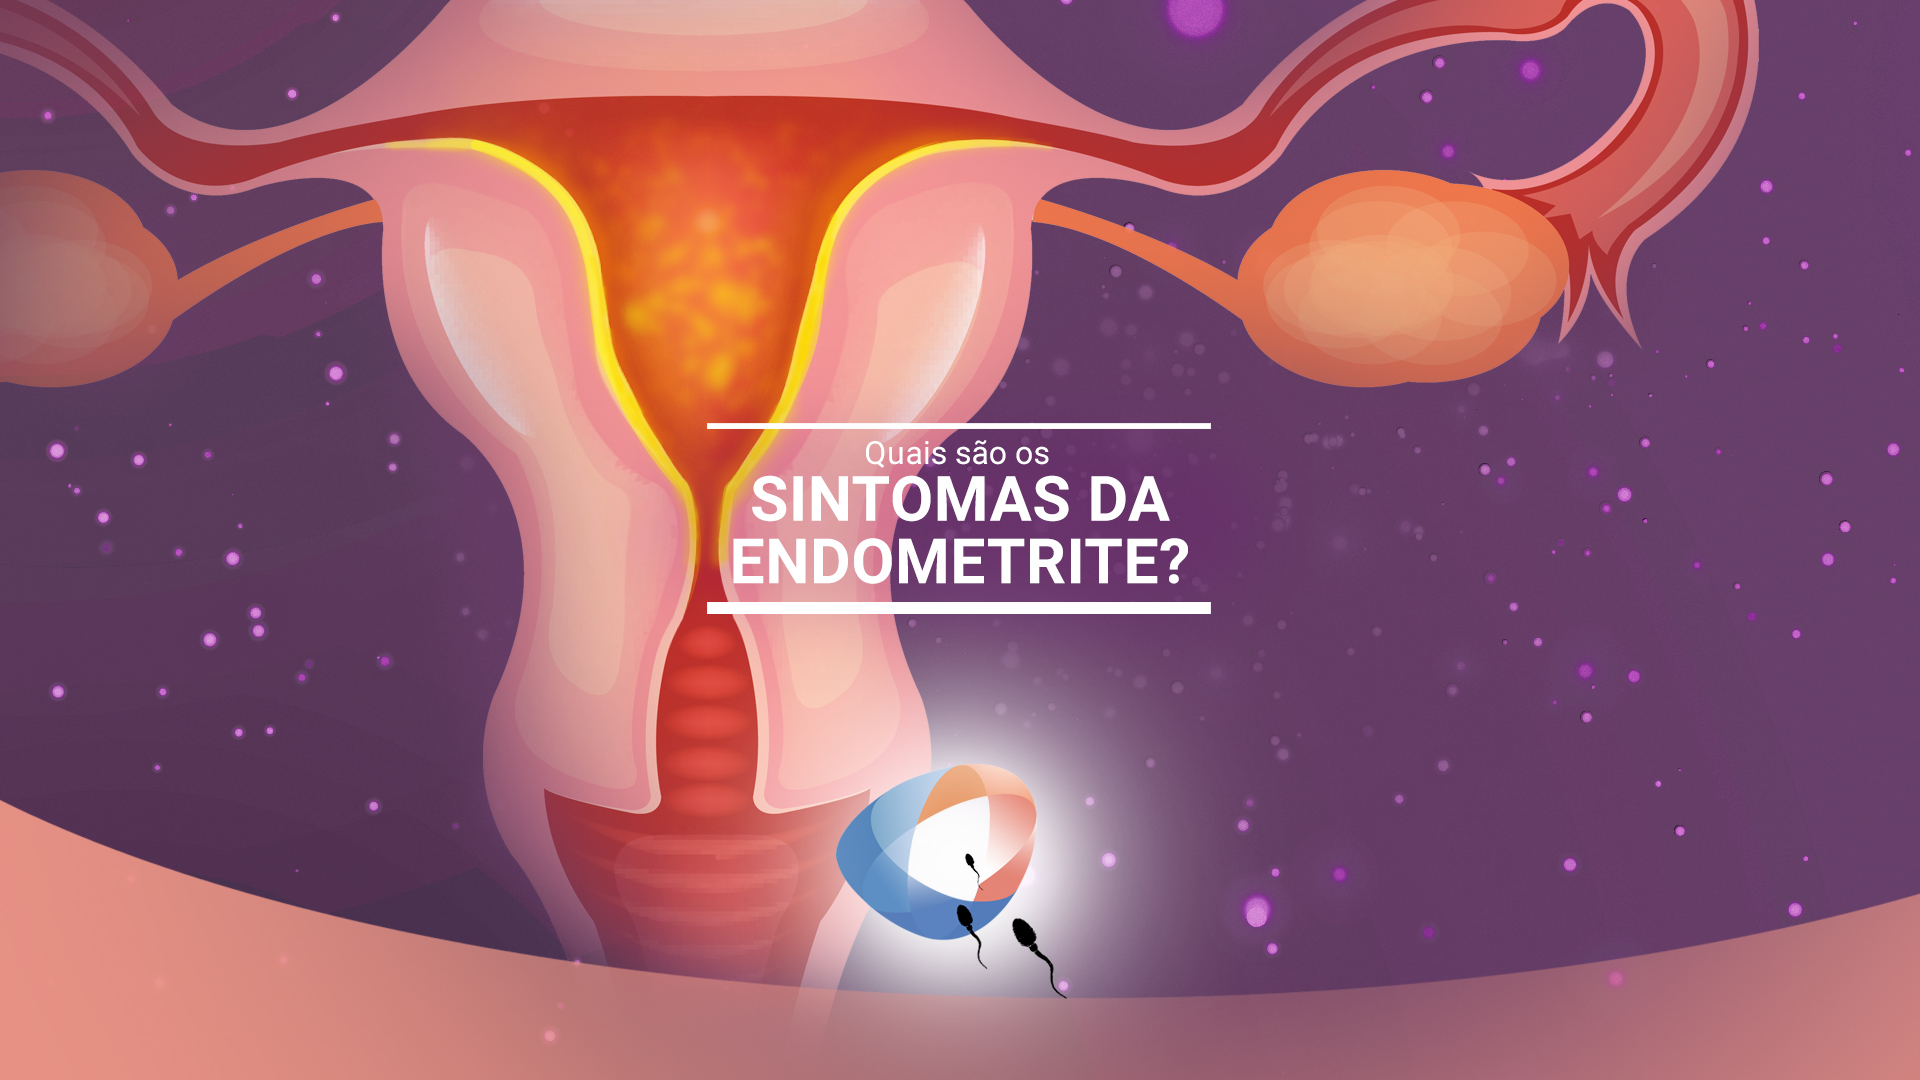 Quais S O Os Sintomas Da Endometrite Dr Augusto Bussab Reprodu O Humana